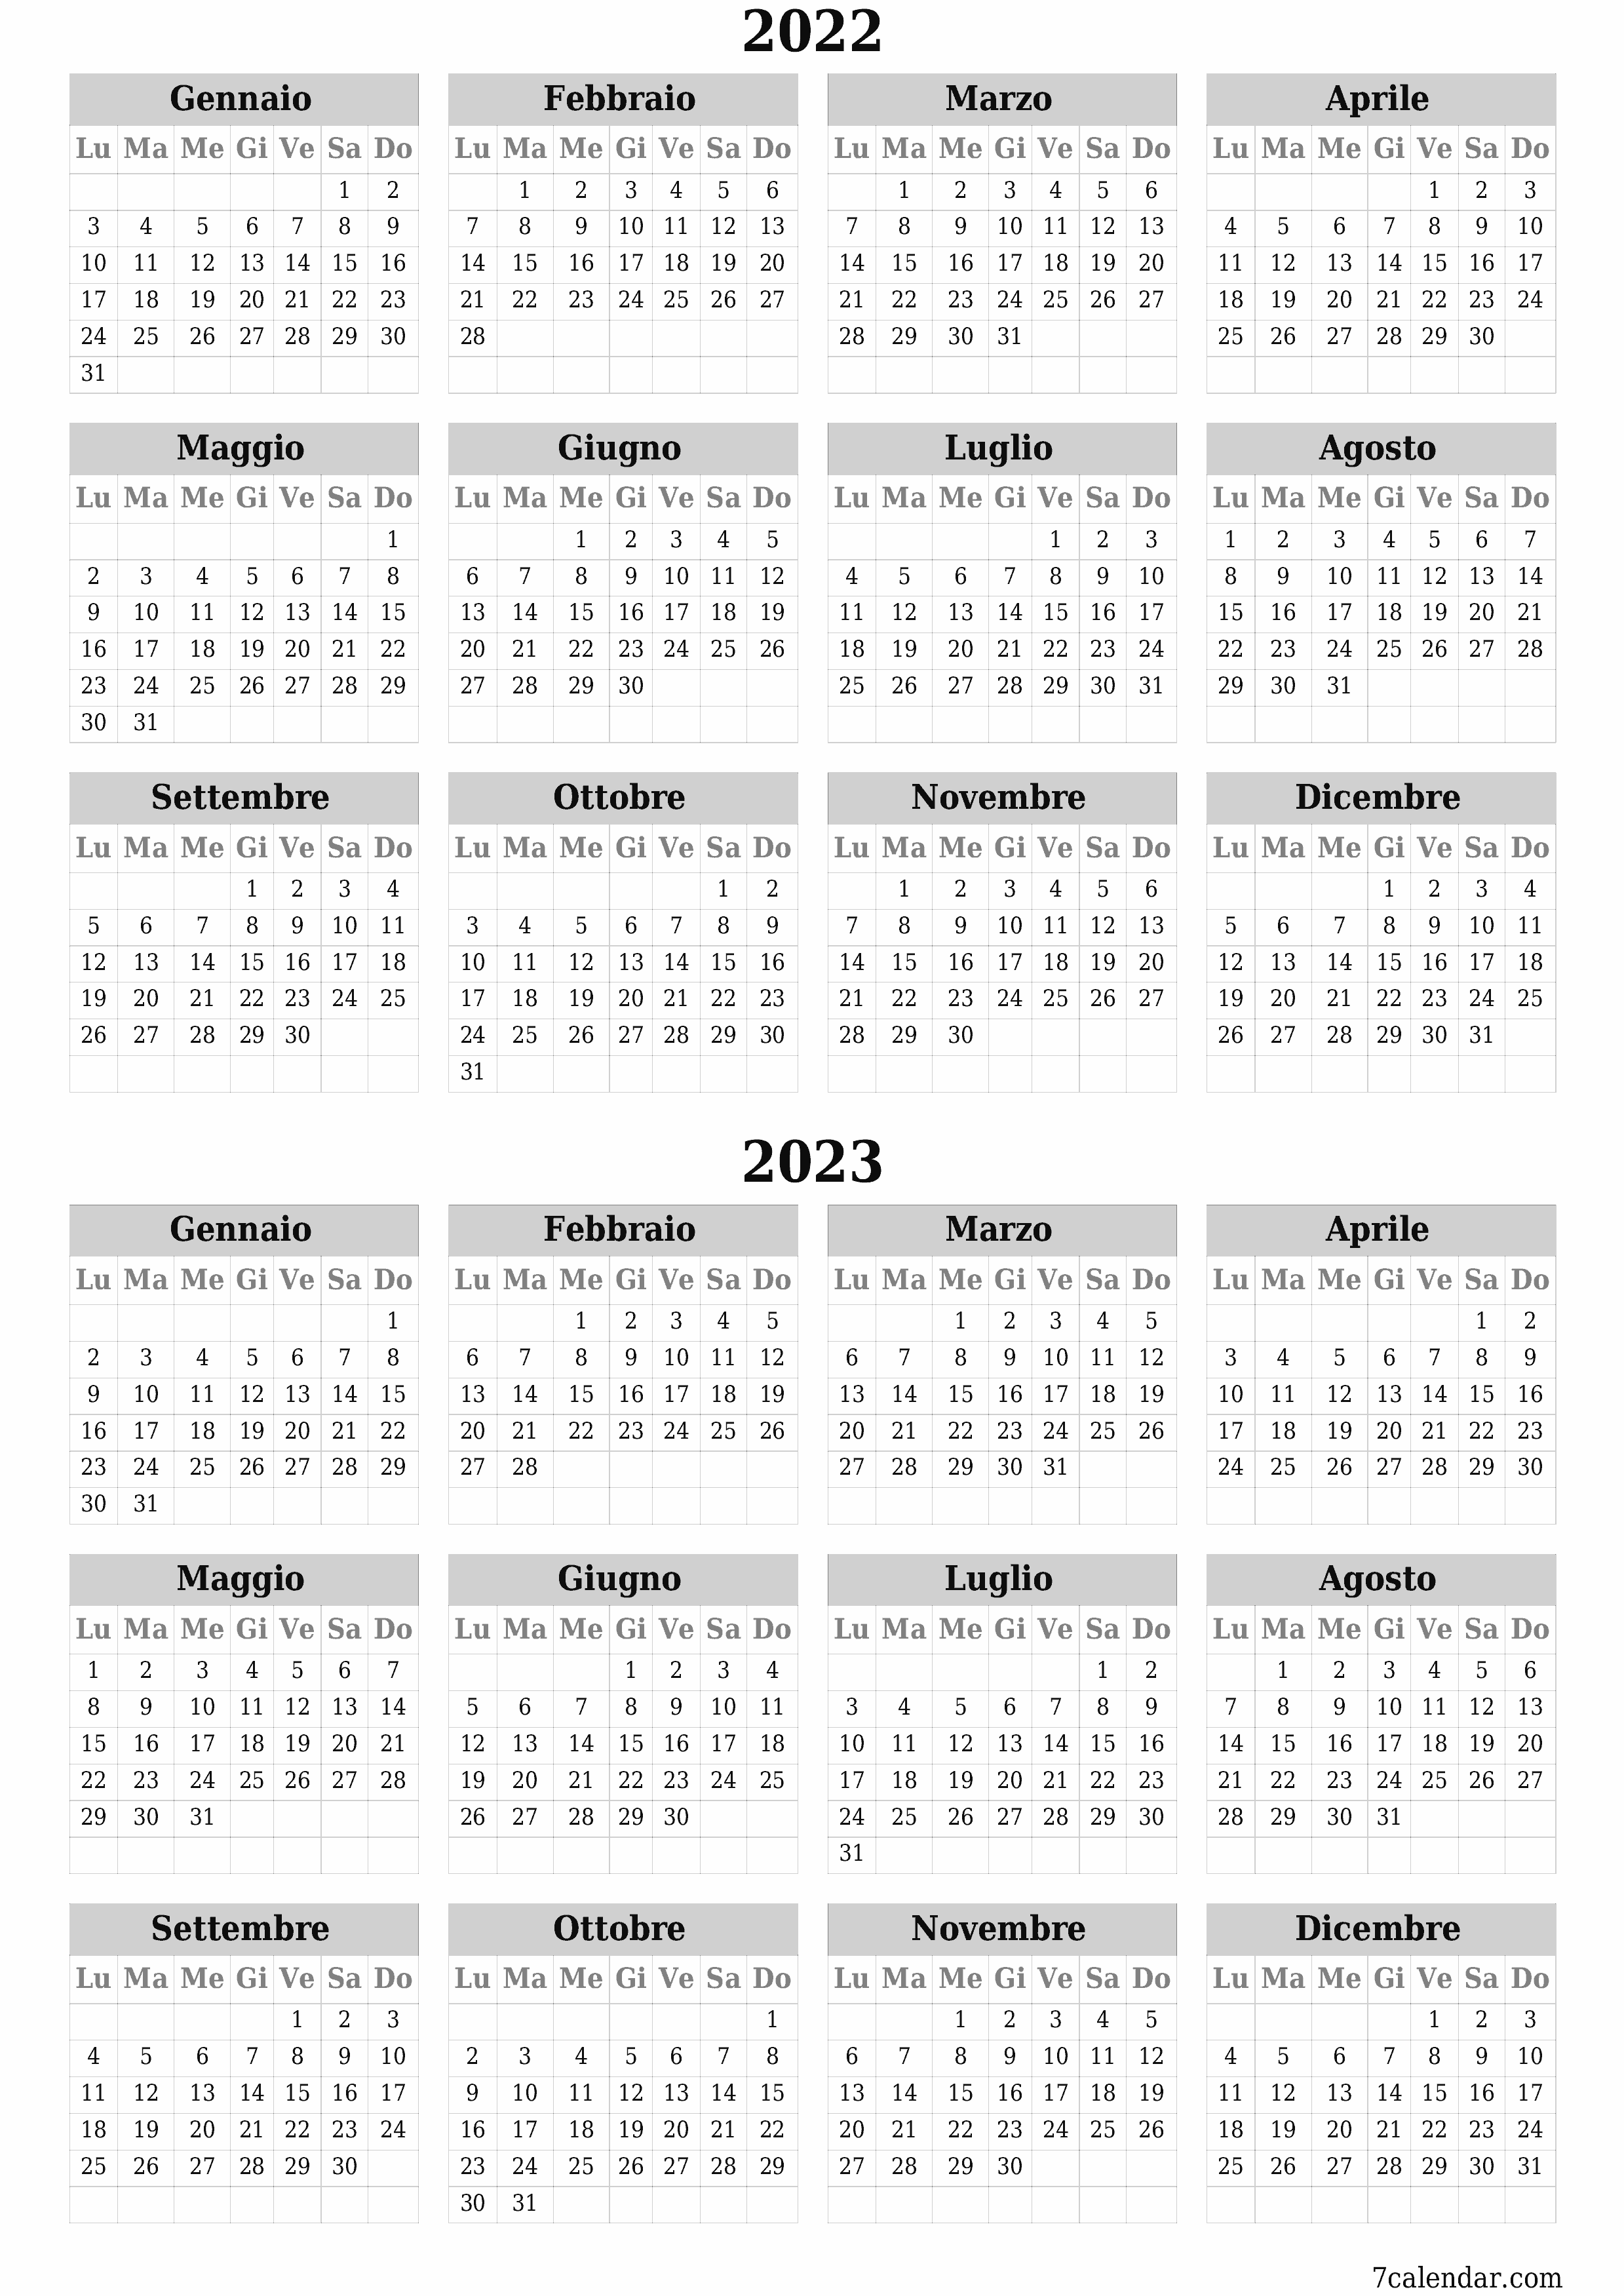 Calendario pianificatore annuale vuoto per l'anno 2022, 2023 con note, salva e stampa in PDF PNG Italian - 7calendar.com